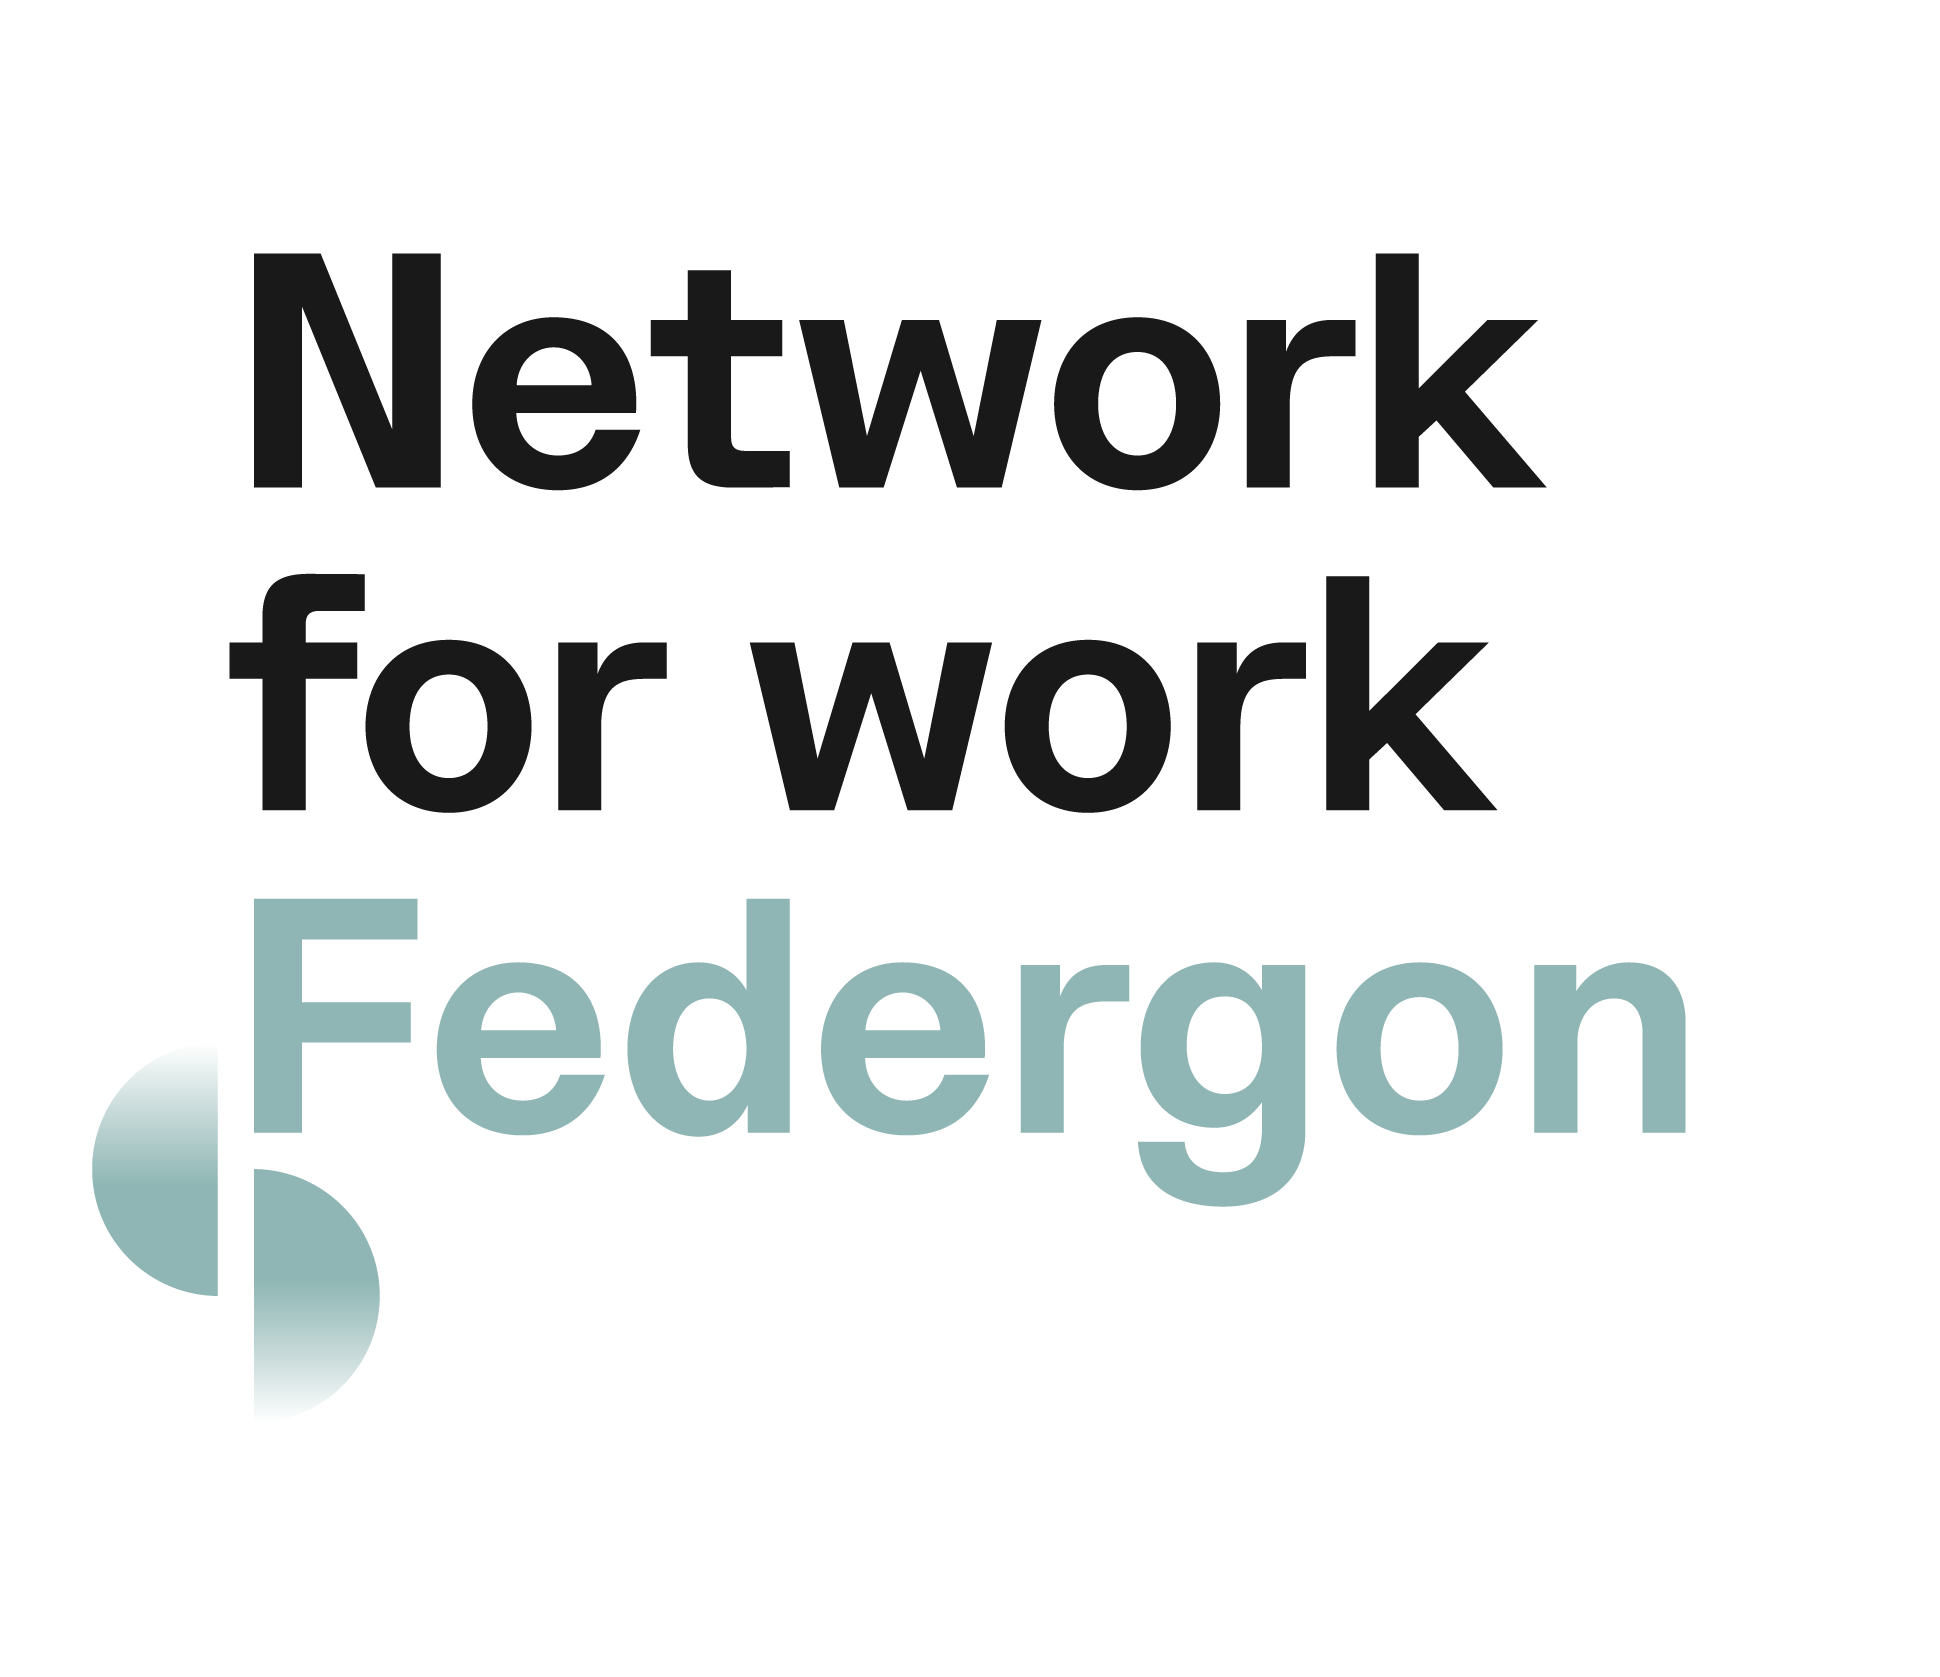 
                        Federgon La Federation                        